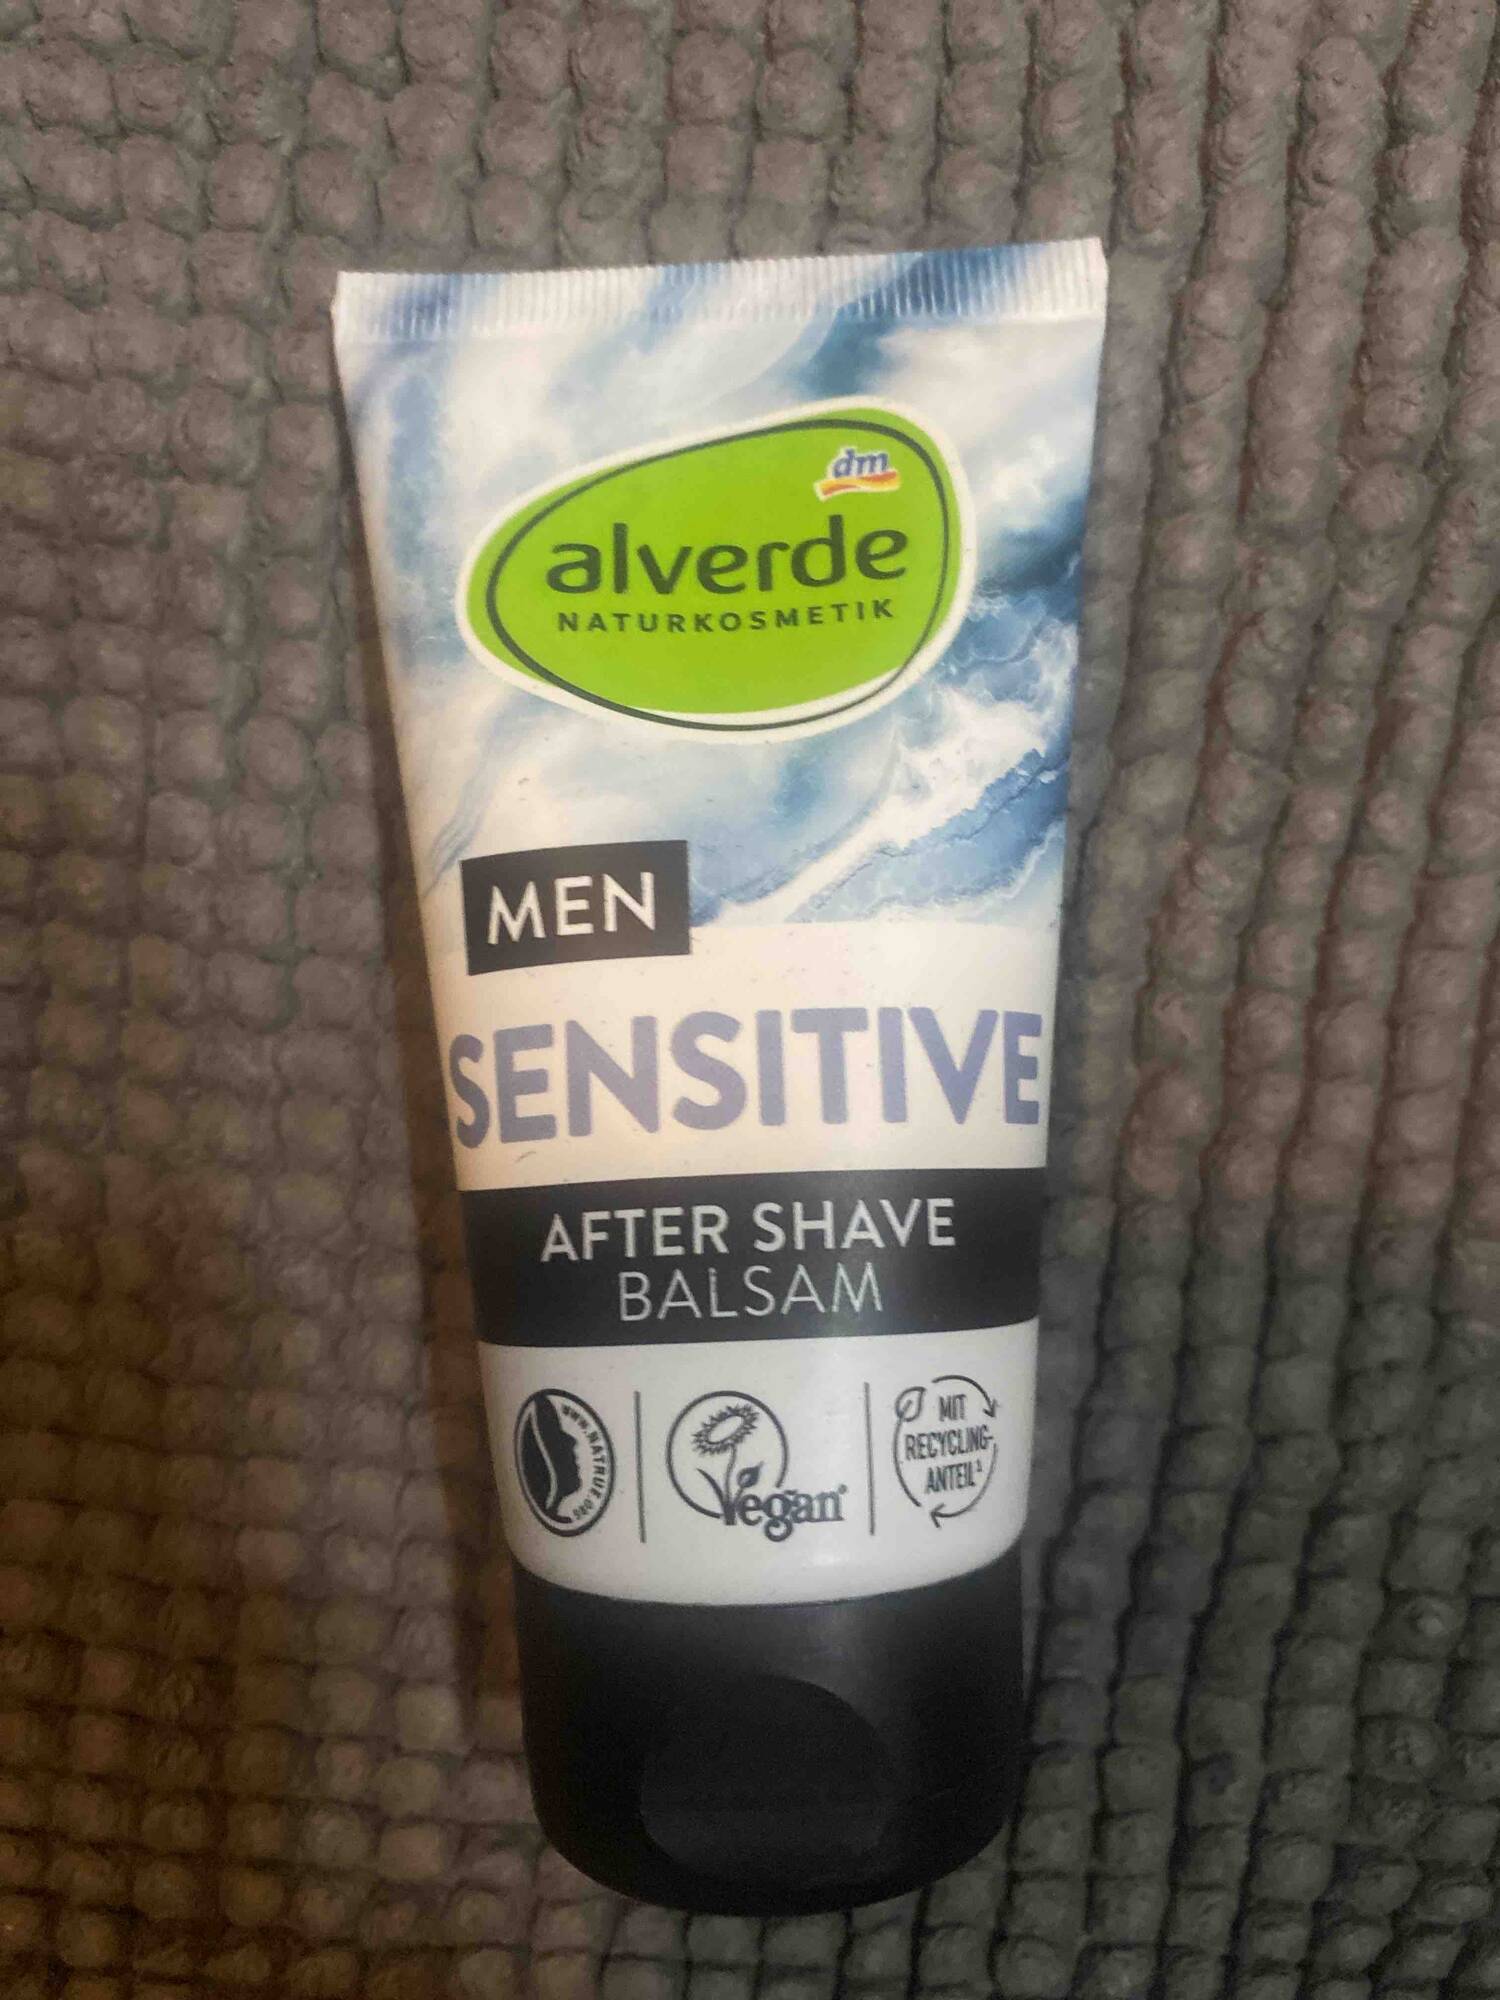 ALVERDE NATURKOSMETIK - Men sensitive - After shave balsam